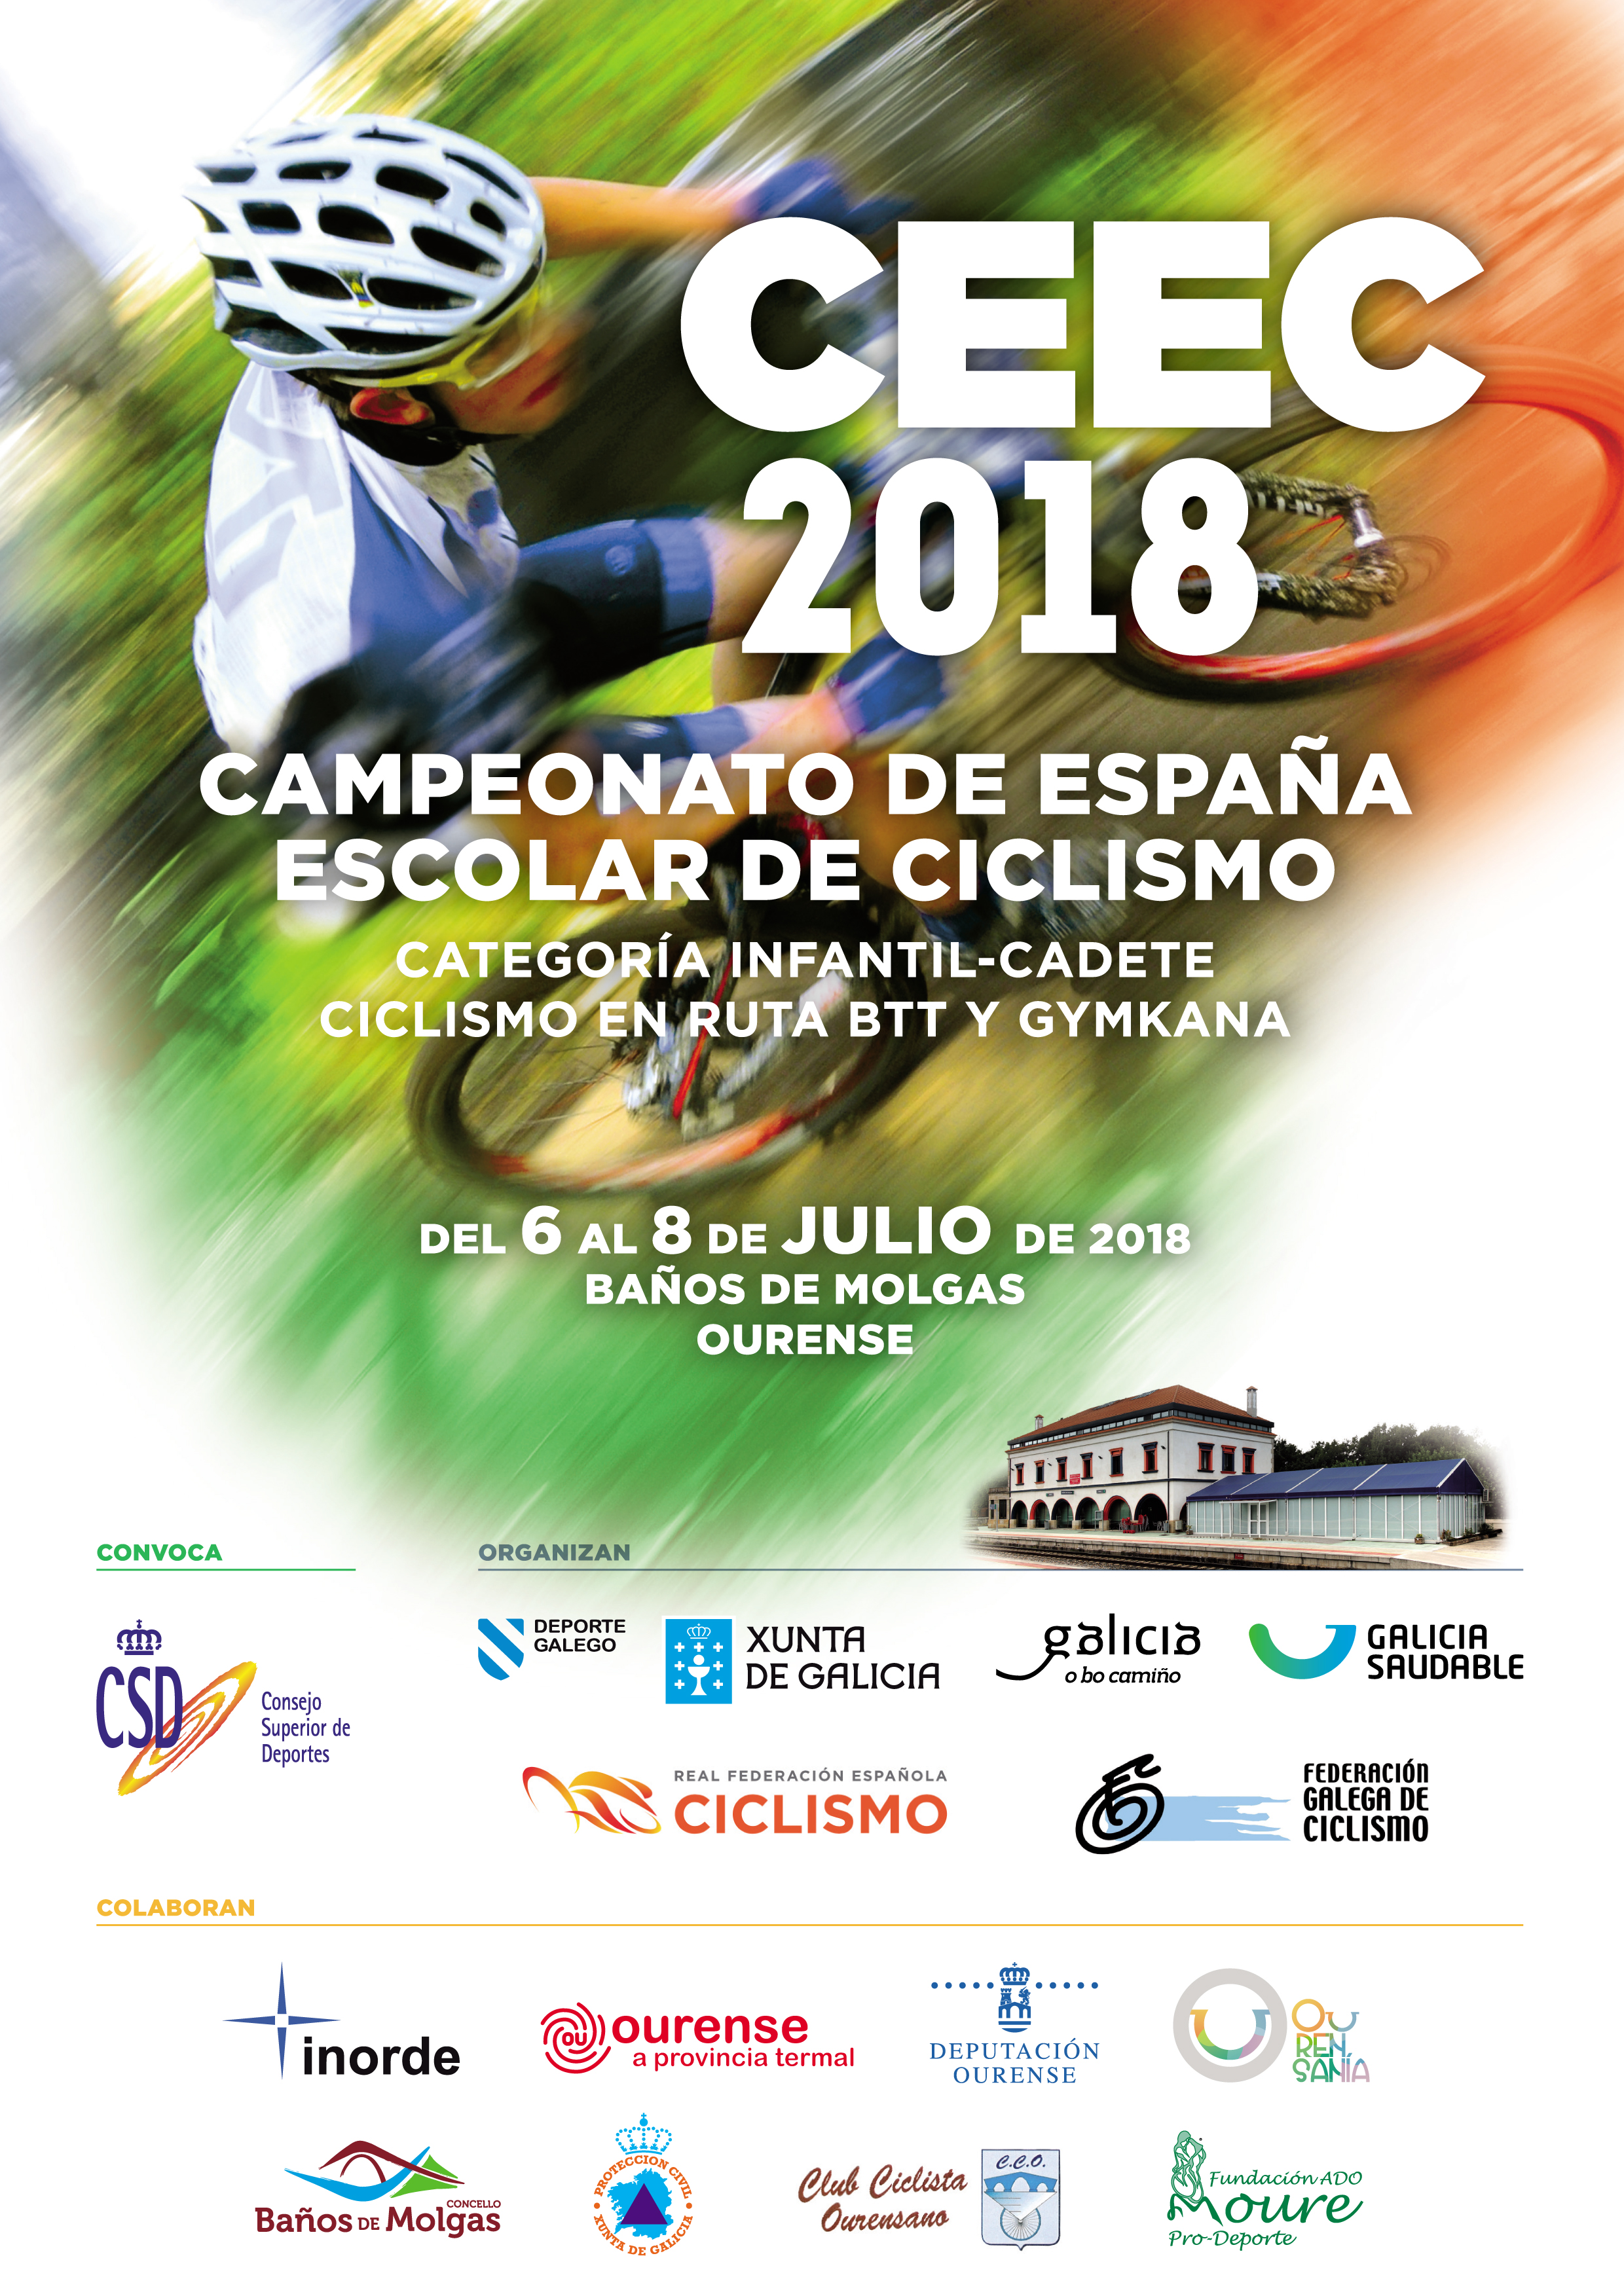 Campeonato de España Escolar de Ciclismo